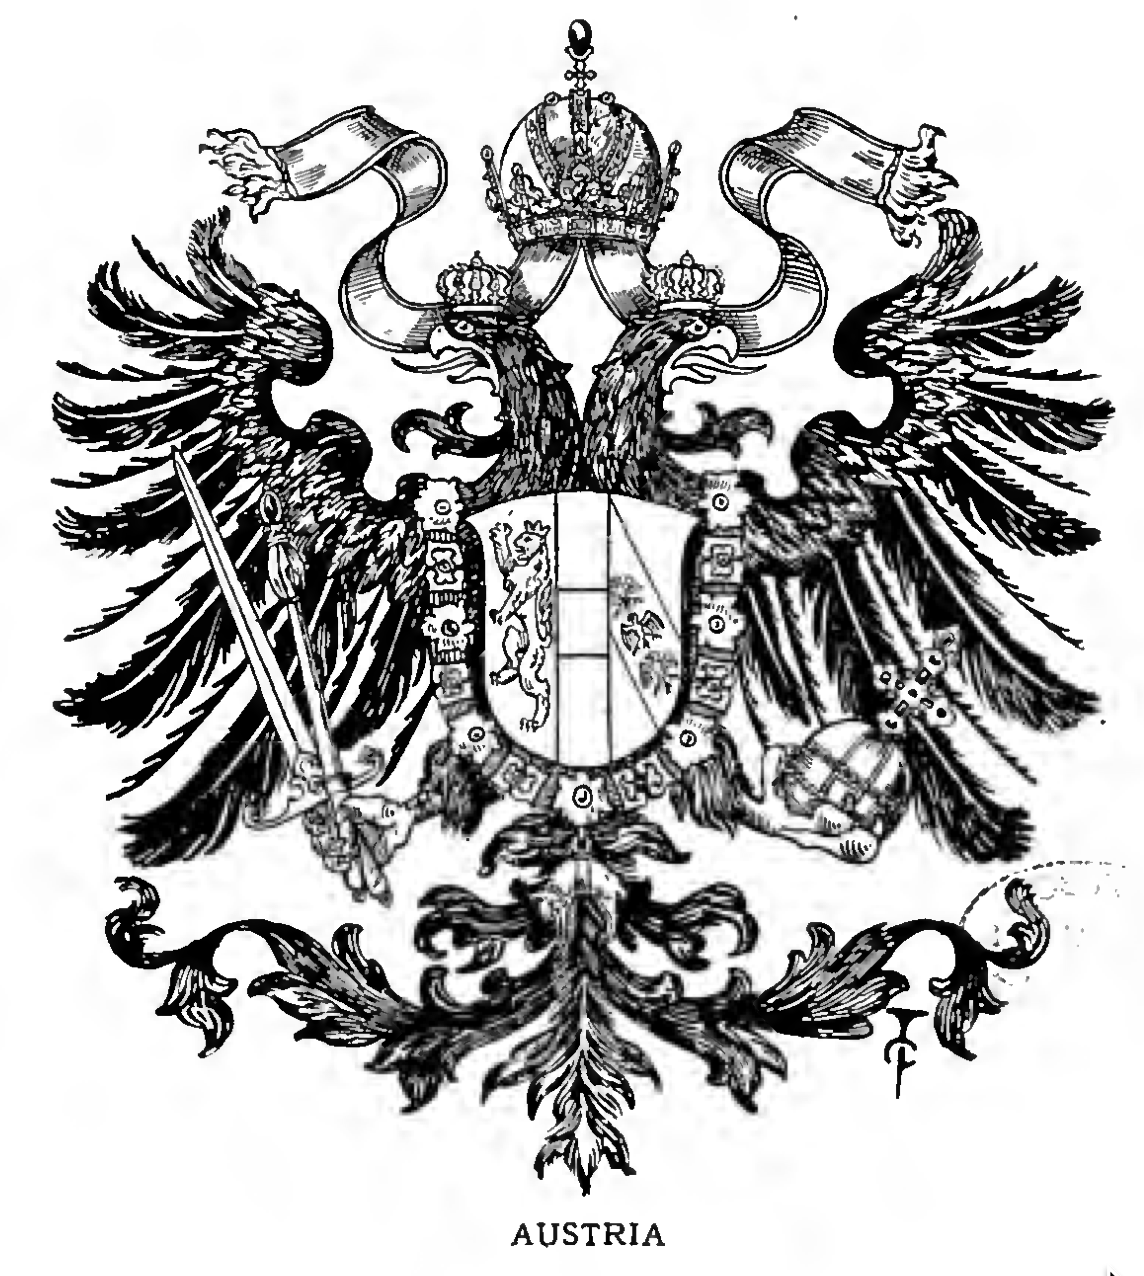 AUSTRIA, Empire of.